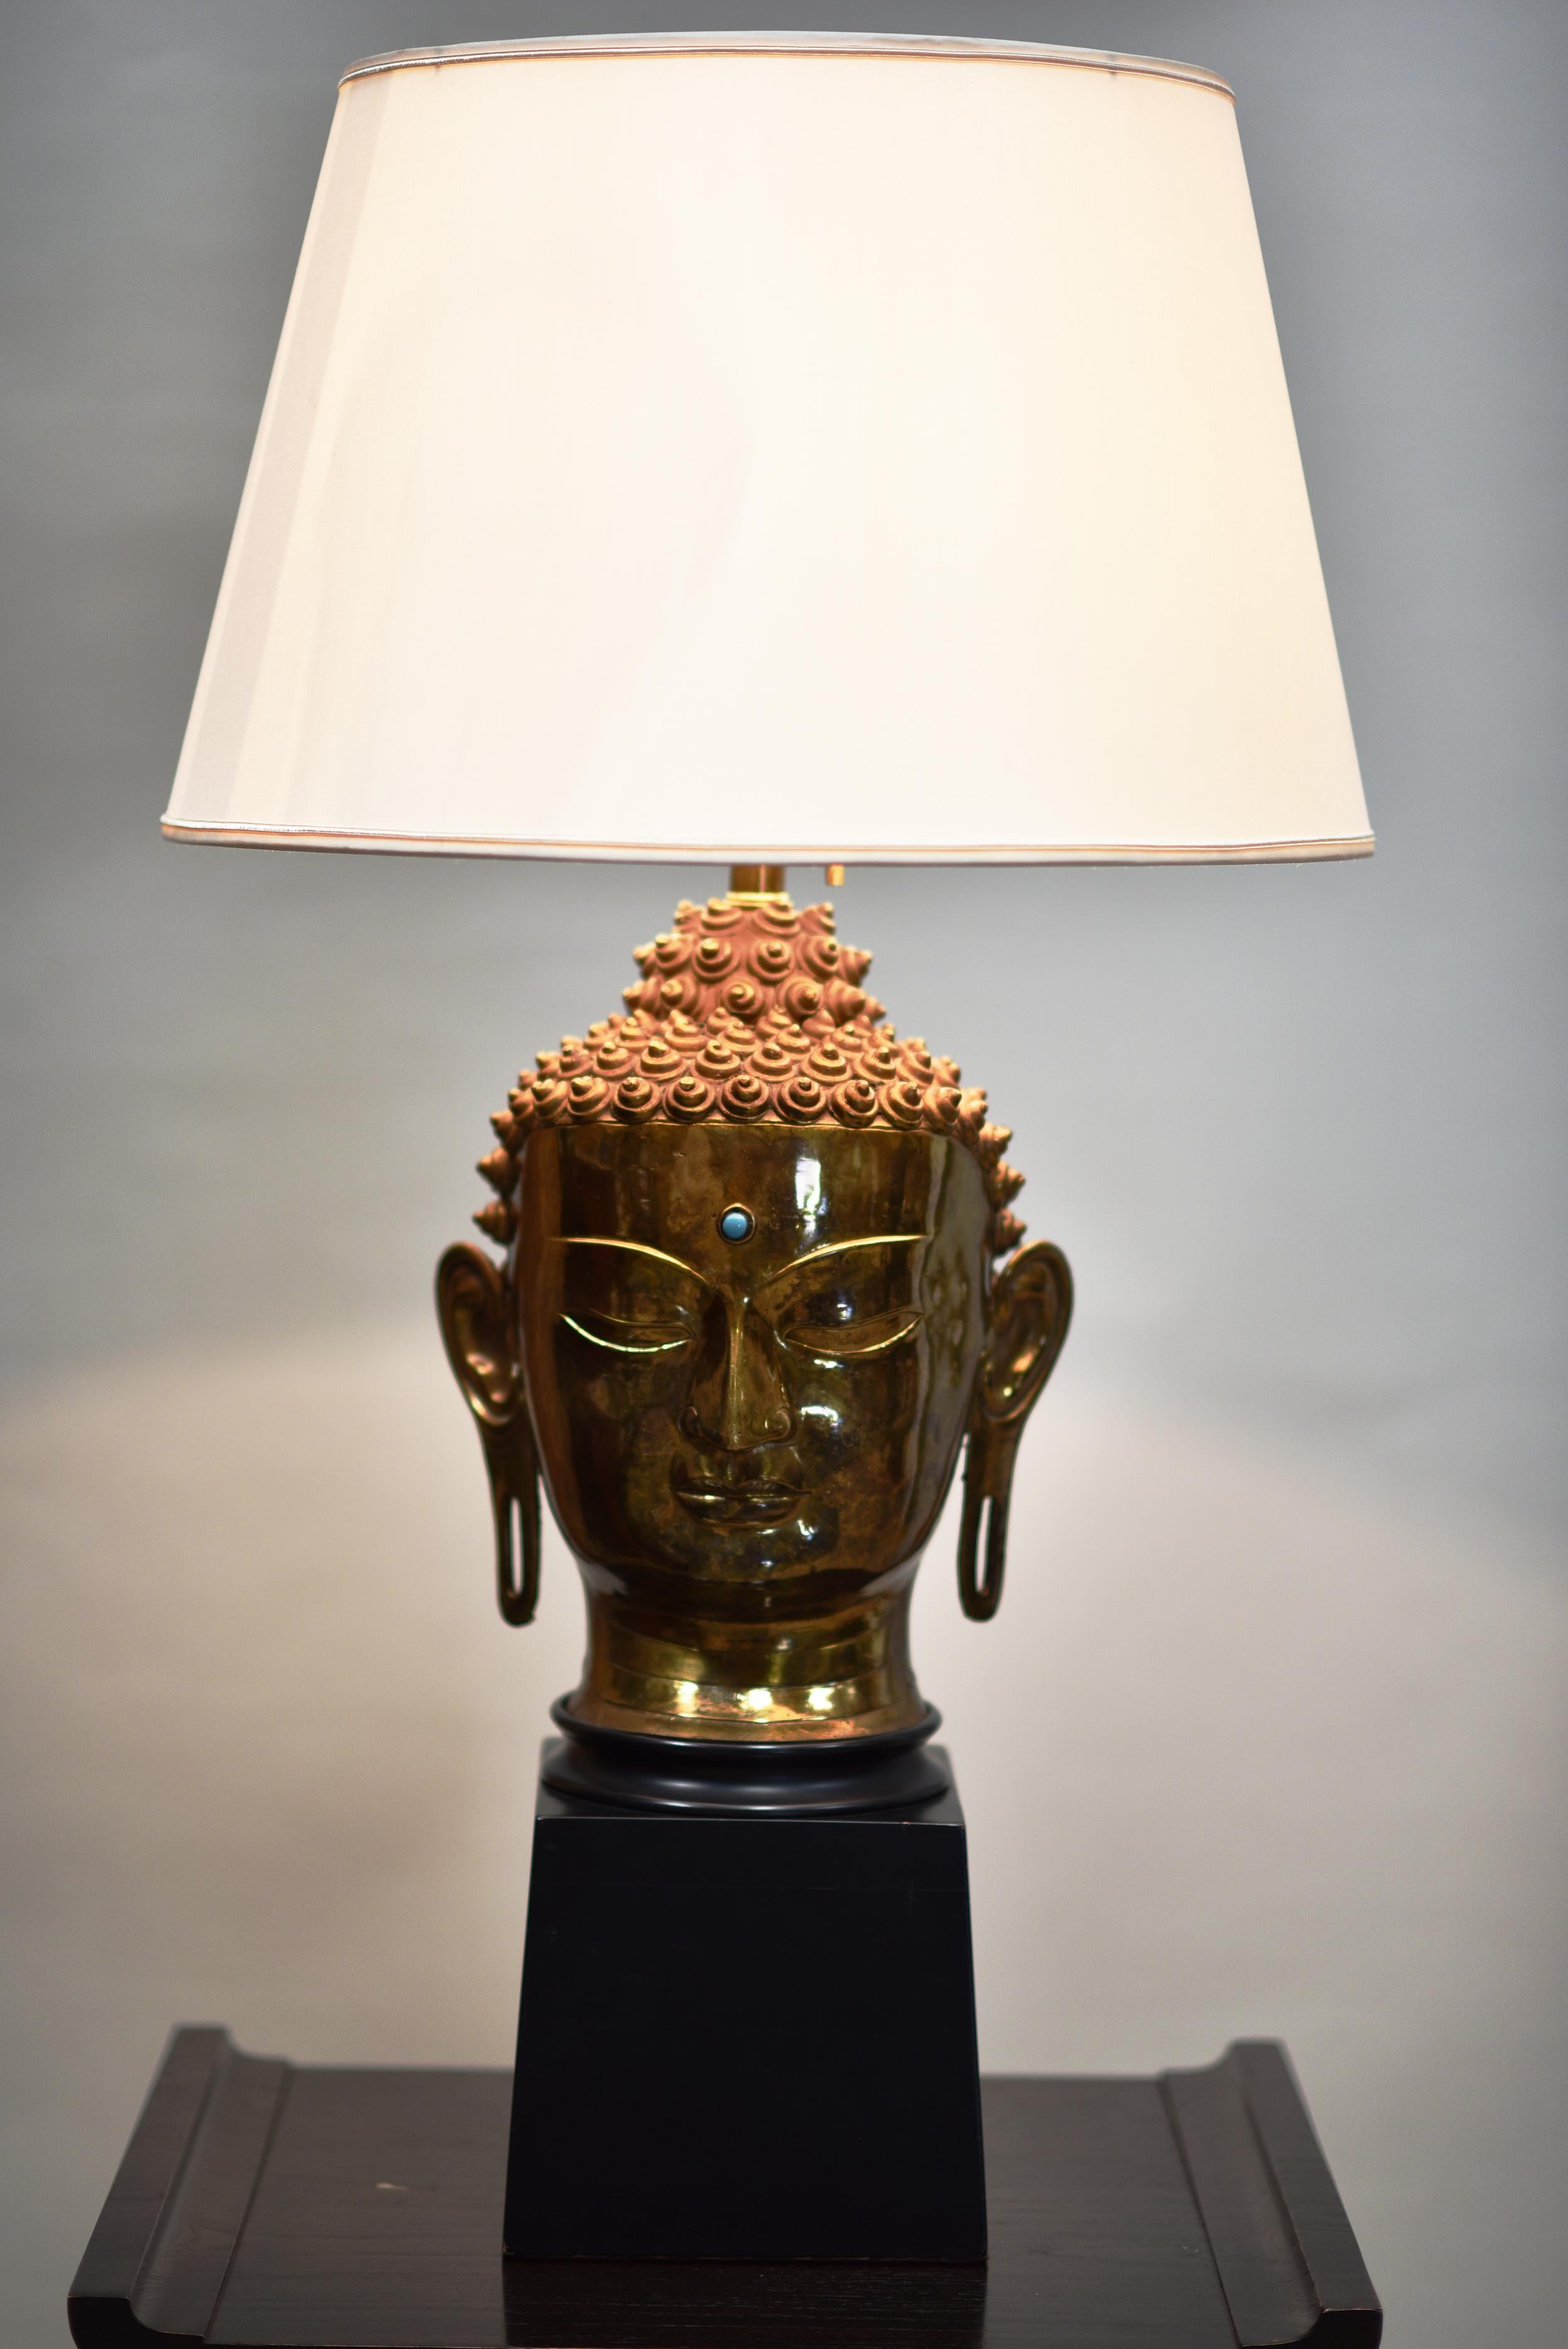 L'artiste et le fabricant sont inconnus. Il s'agit d'une magnifique lampe de tête hindoue en laiton et en bois avec des marques distinctives dans la coiffe et les ornements avec un Jewell au centre de la tête du bouddha.